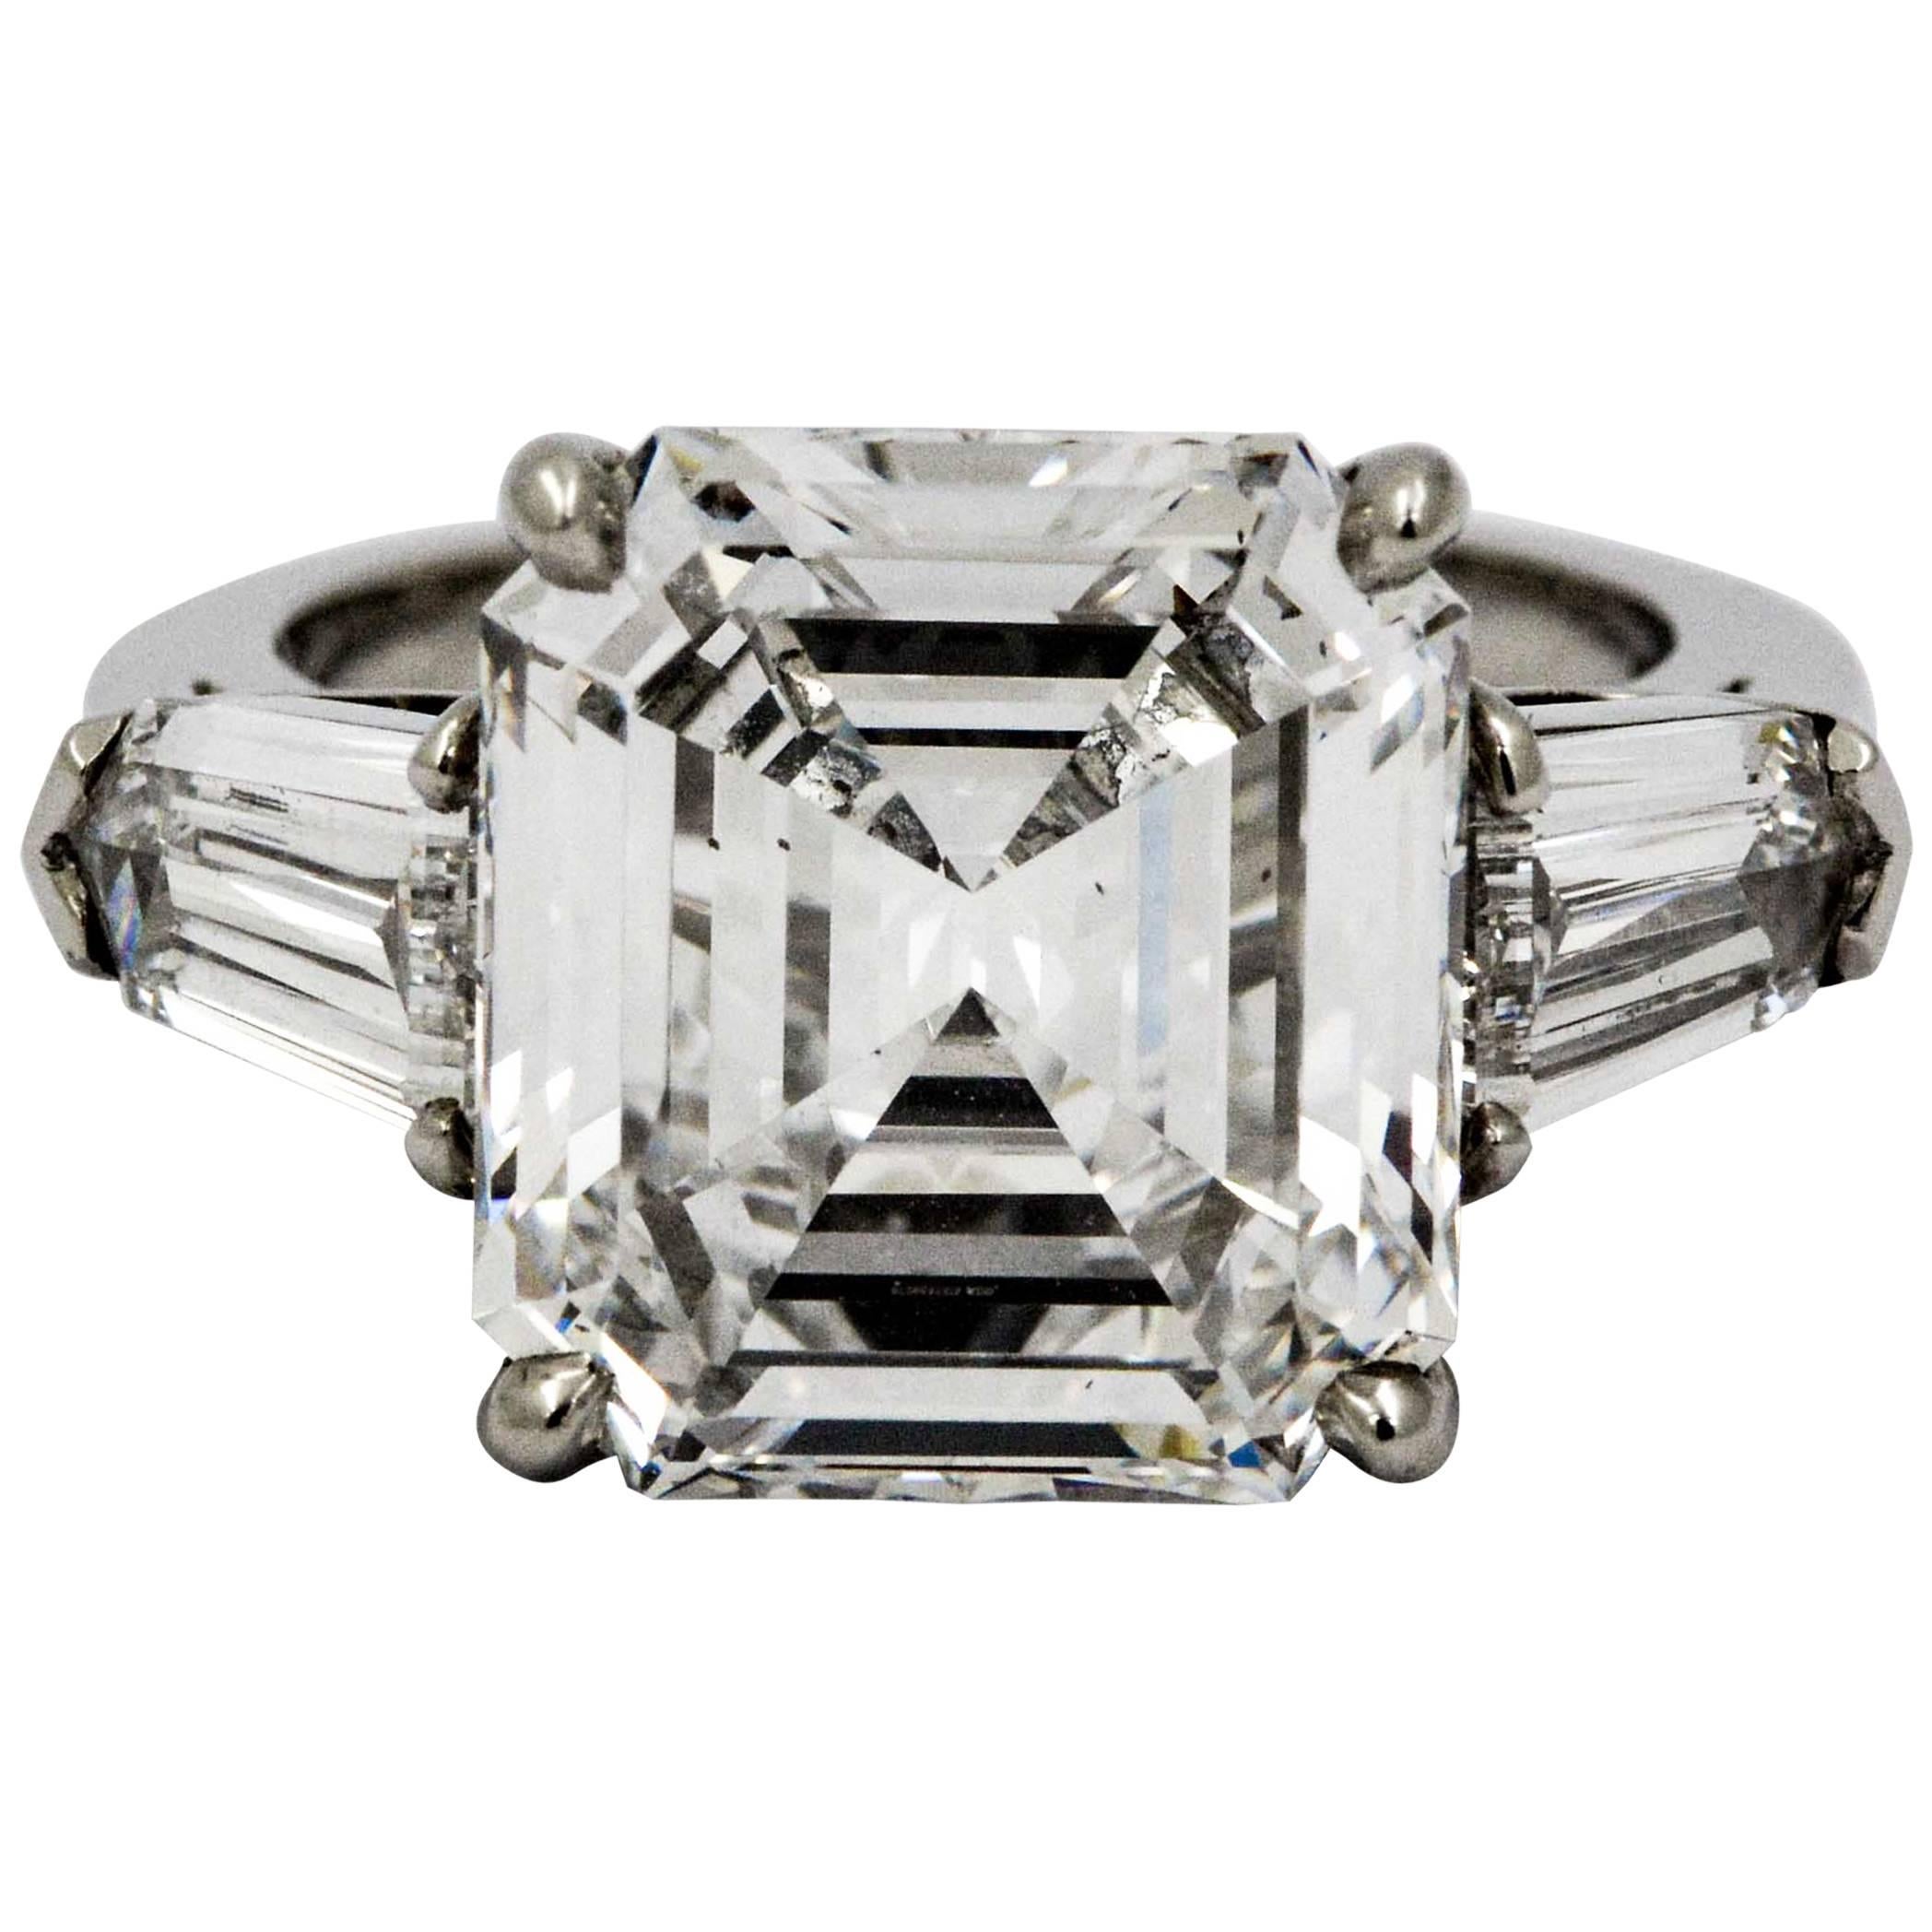 8.02 Carat Emerald Cut Diamond Platinum Engagement Ring